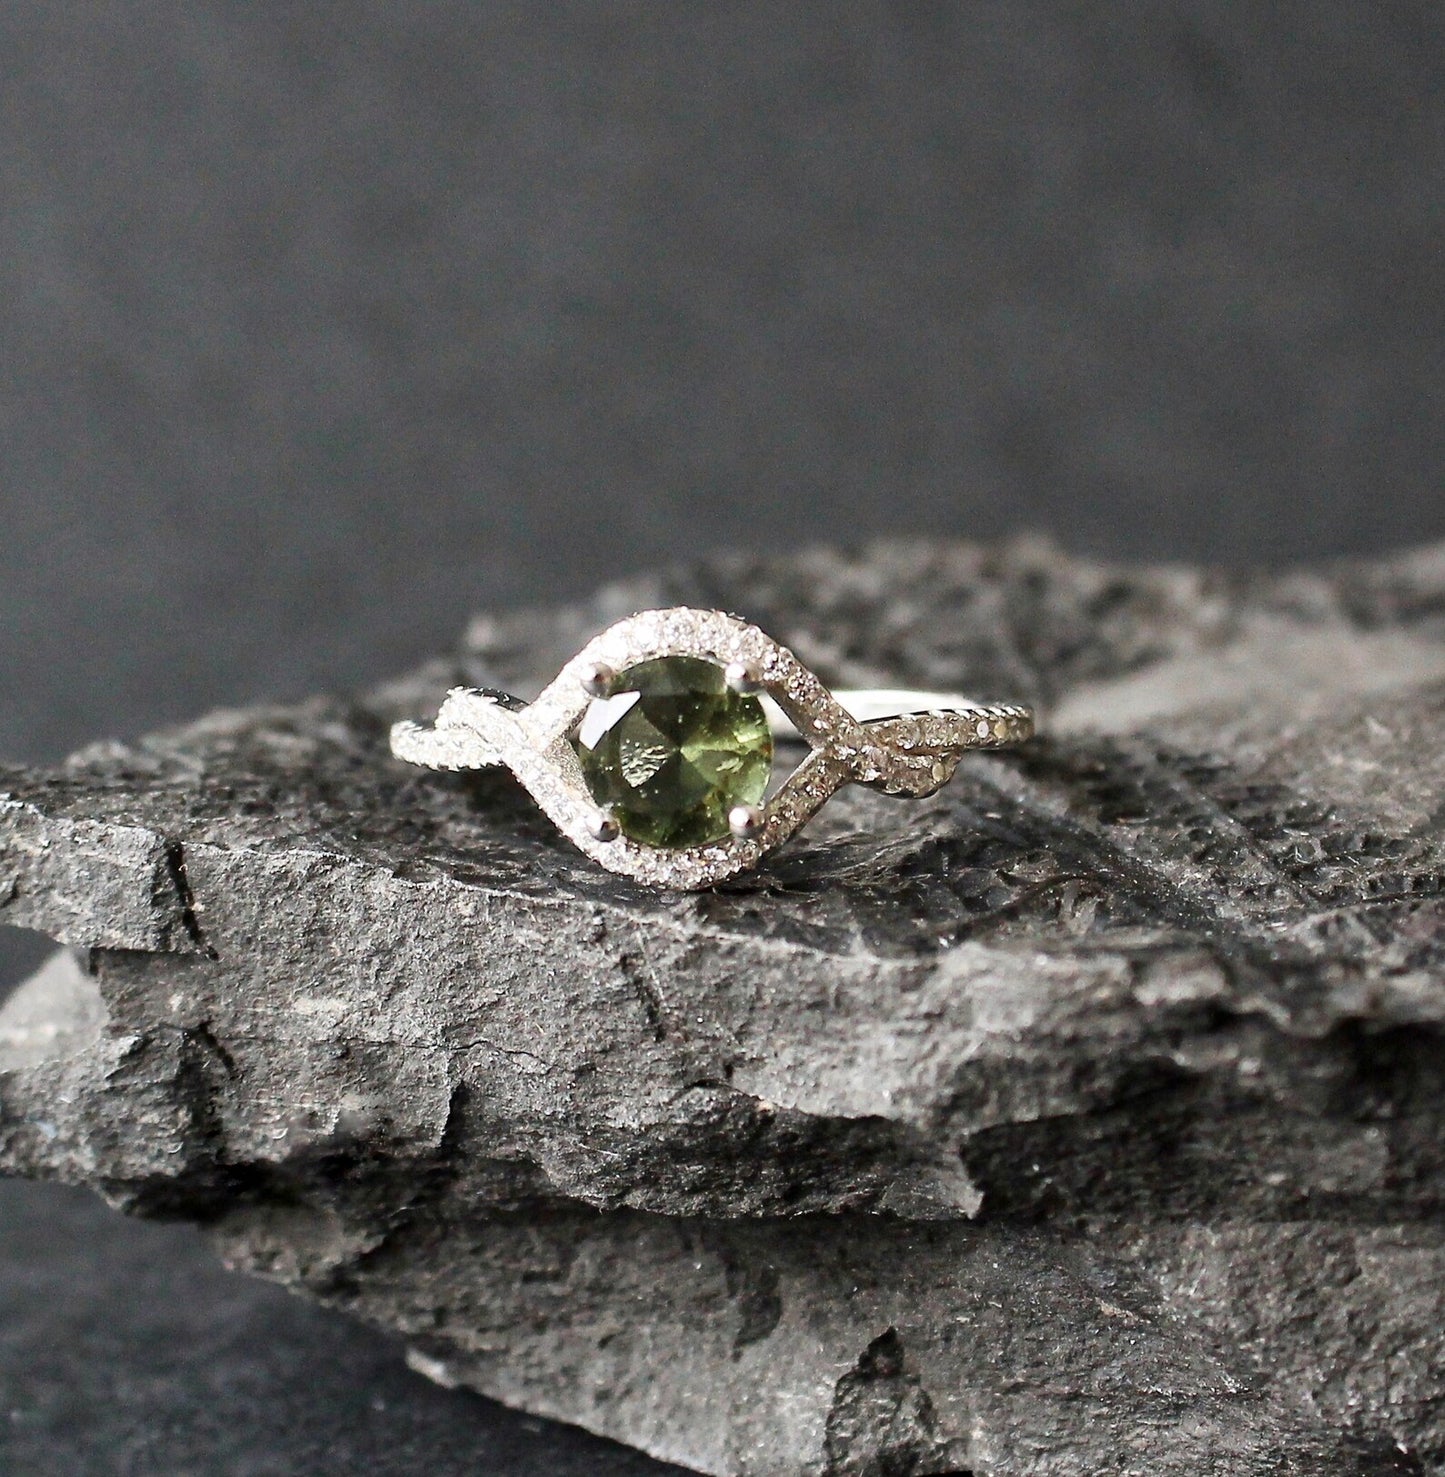 Genuine moldavite ring 6mm stone, real Moldavite ring Silver, Czech moldavite ring with certificate Moldavite jewelry Moldavite wedding ring